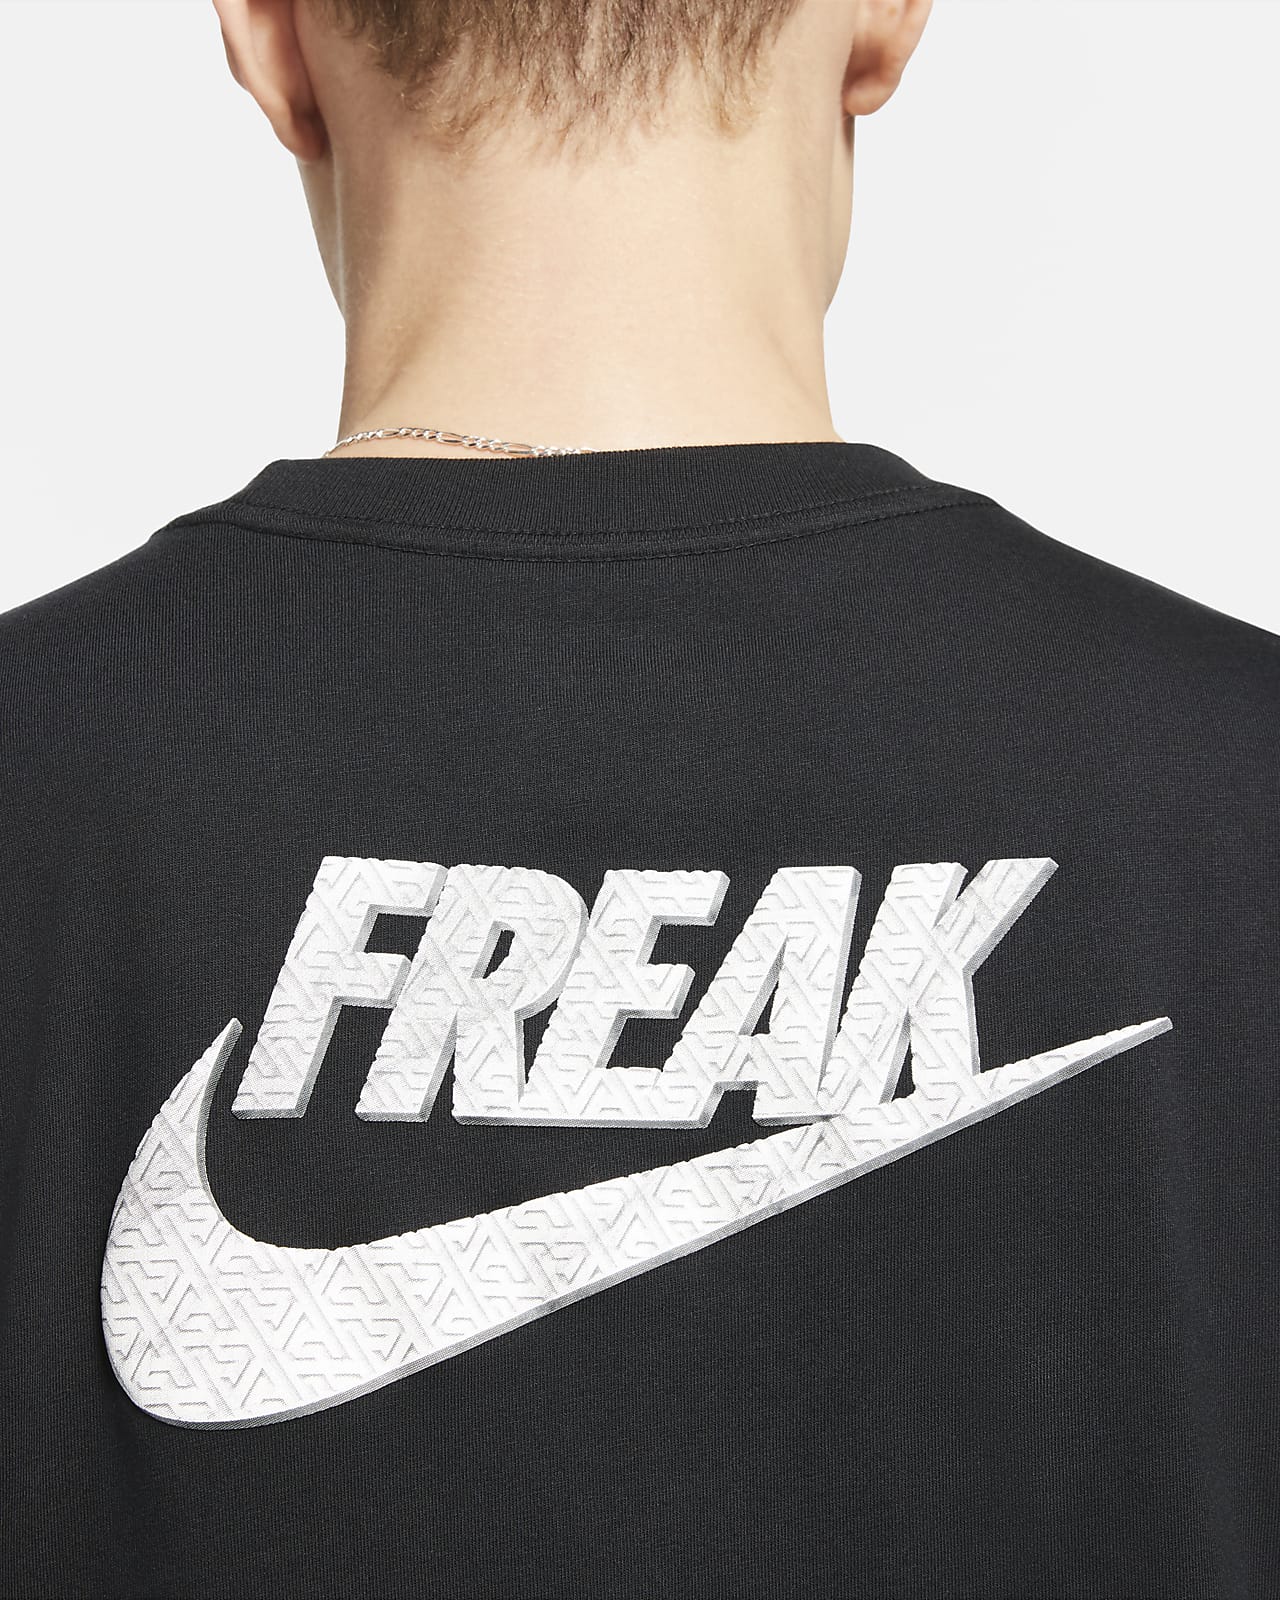 nike freak logo